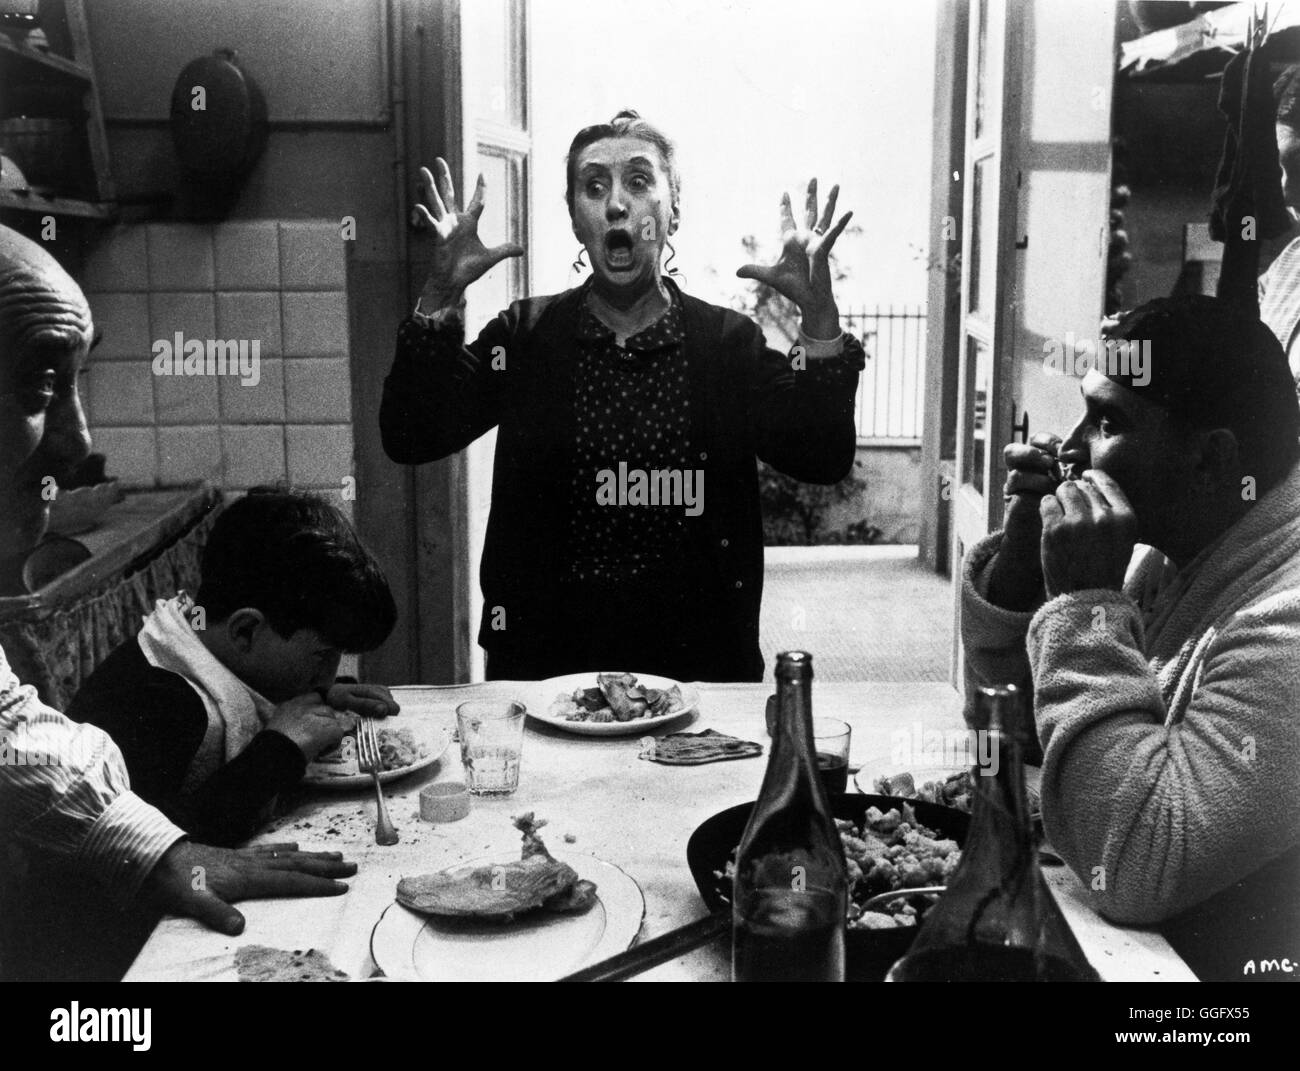 AMARCORD Amarcord / italien Federico Fellini 1974 / BRUNO ZANIN, PUPELLA MAGGIO, ARMANDO BRANCIA dans Fellinis 'Amarcord', 1974. Regie : Federico Fellini aka. Amarcord Banque D'Images